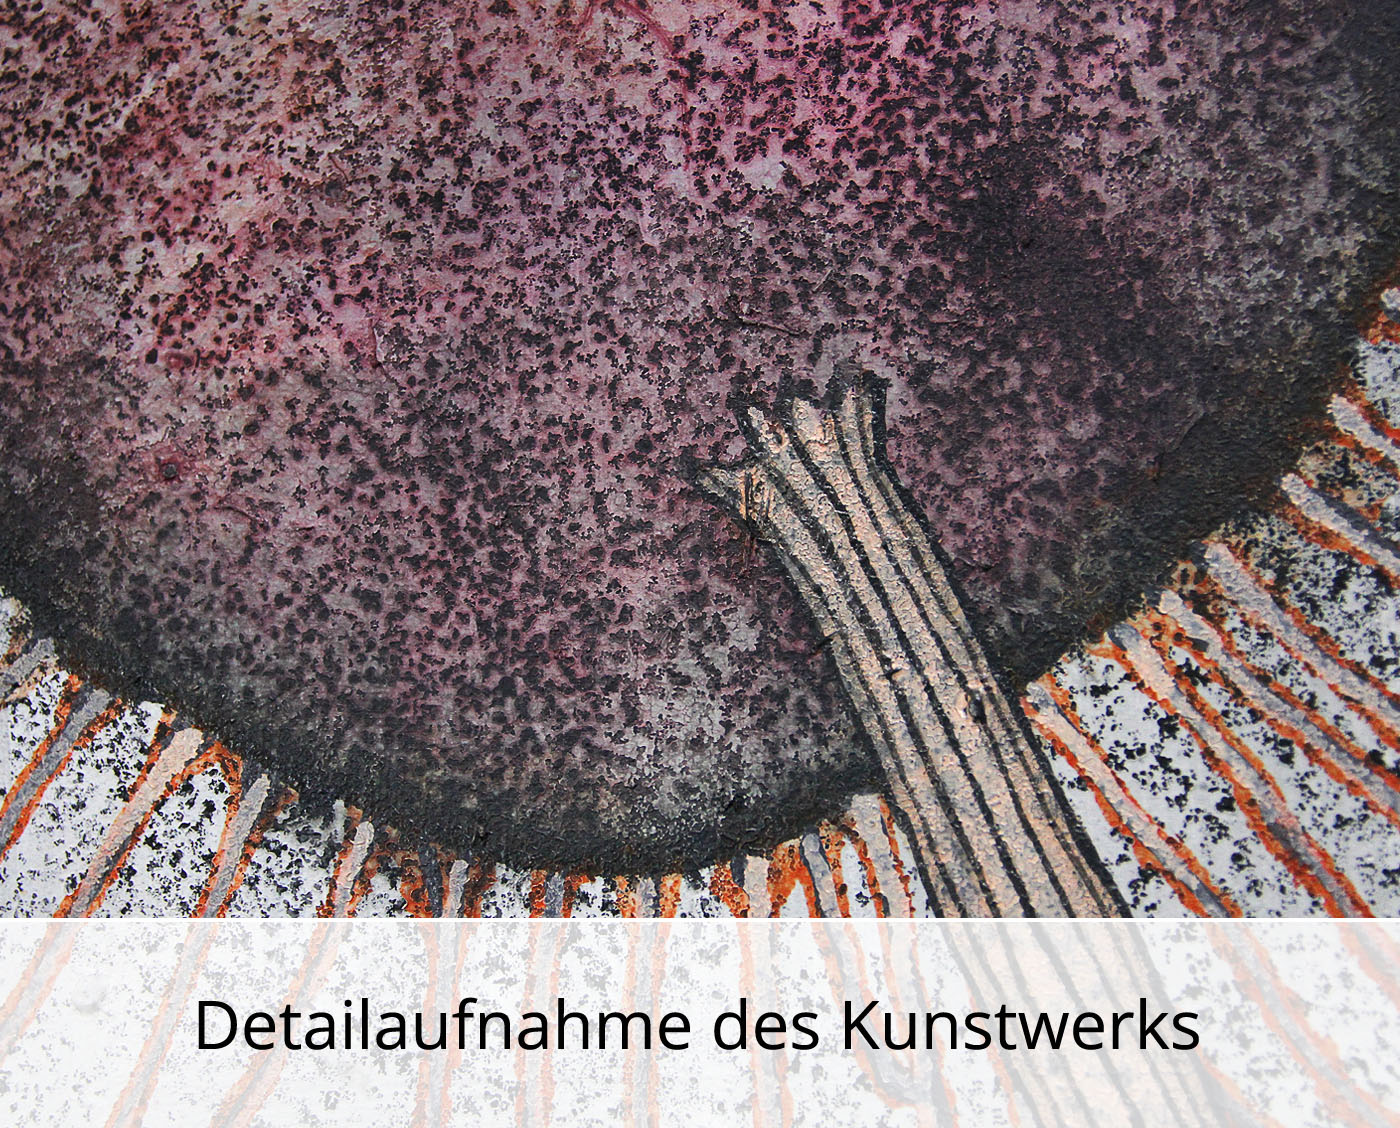 C. Blechschmidt: "Flora mit Luft", Original/Unikat, zeitgenössisches Acrylgemälde